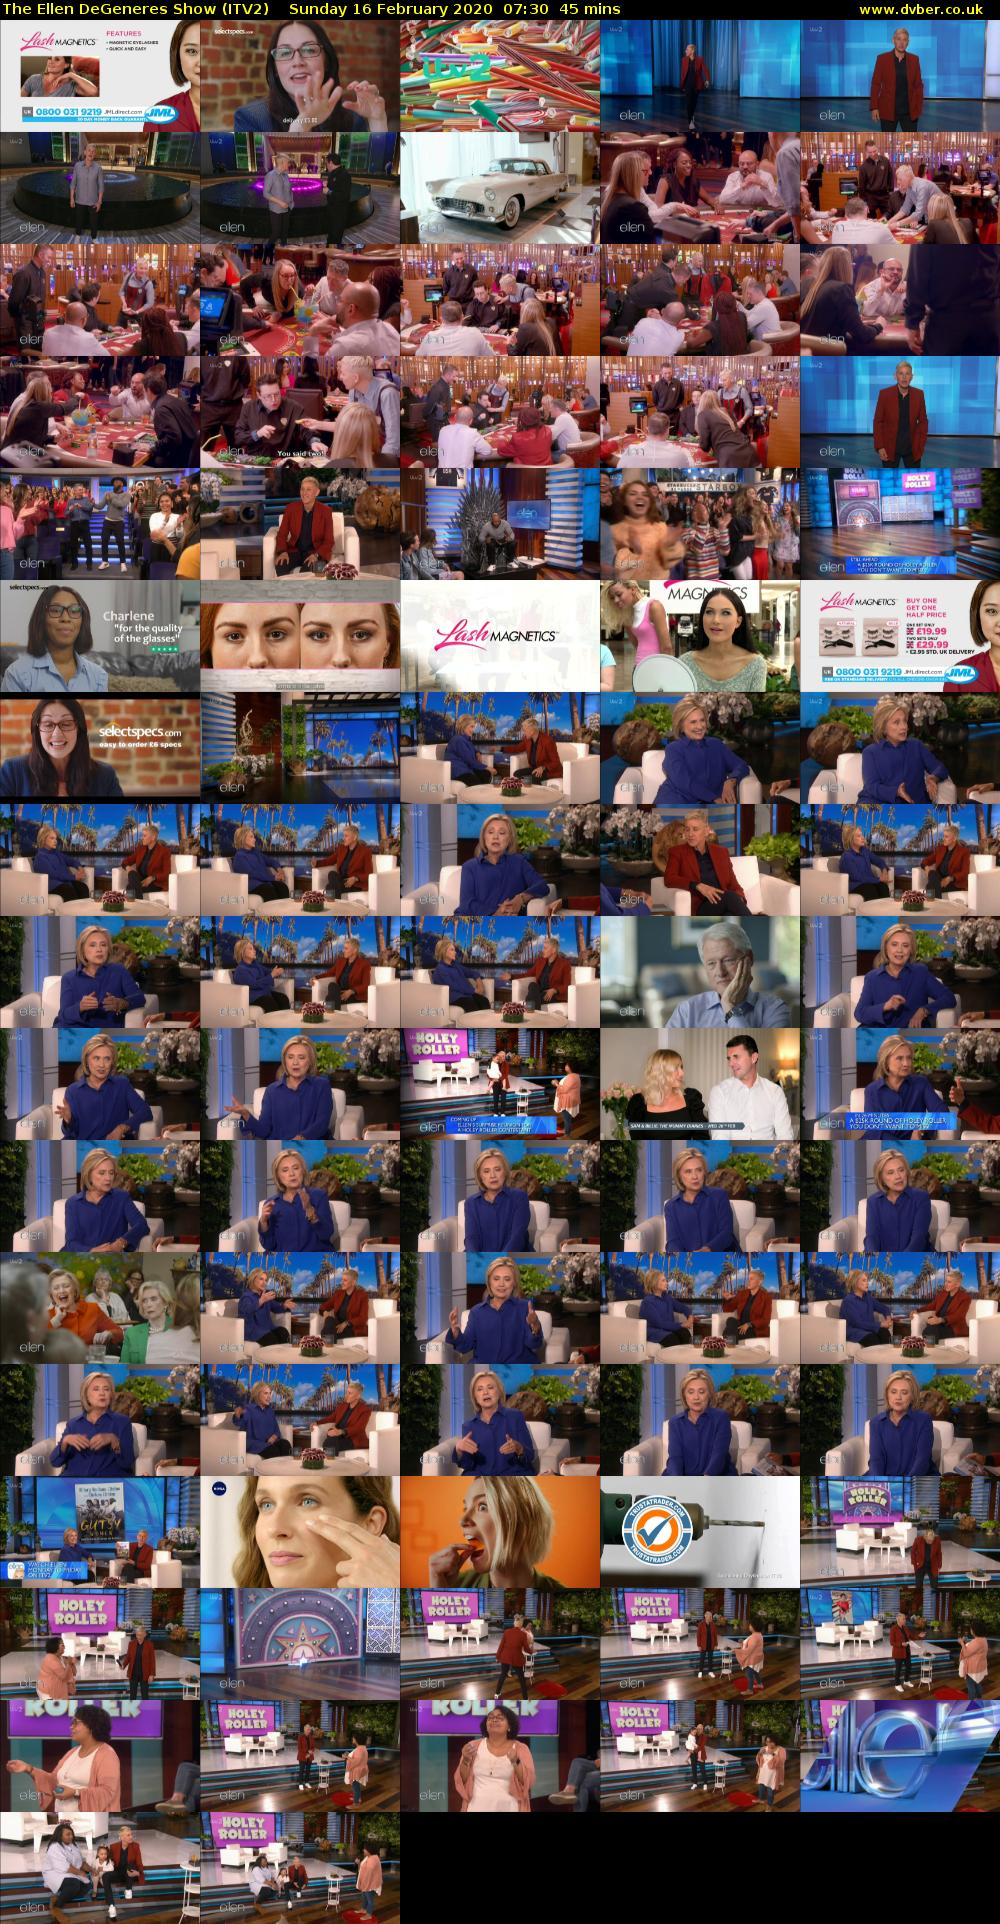 The Ellen DeGeneres Show (ITV2) Sunday 16 February 2020 07:30 - 08:15